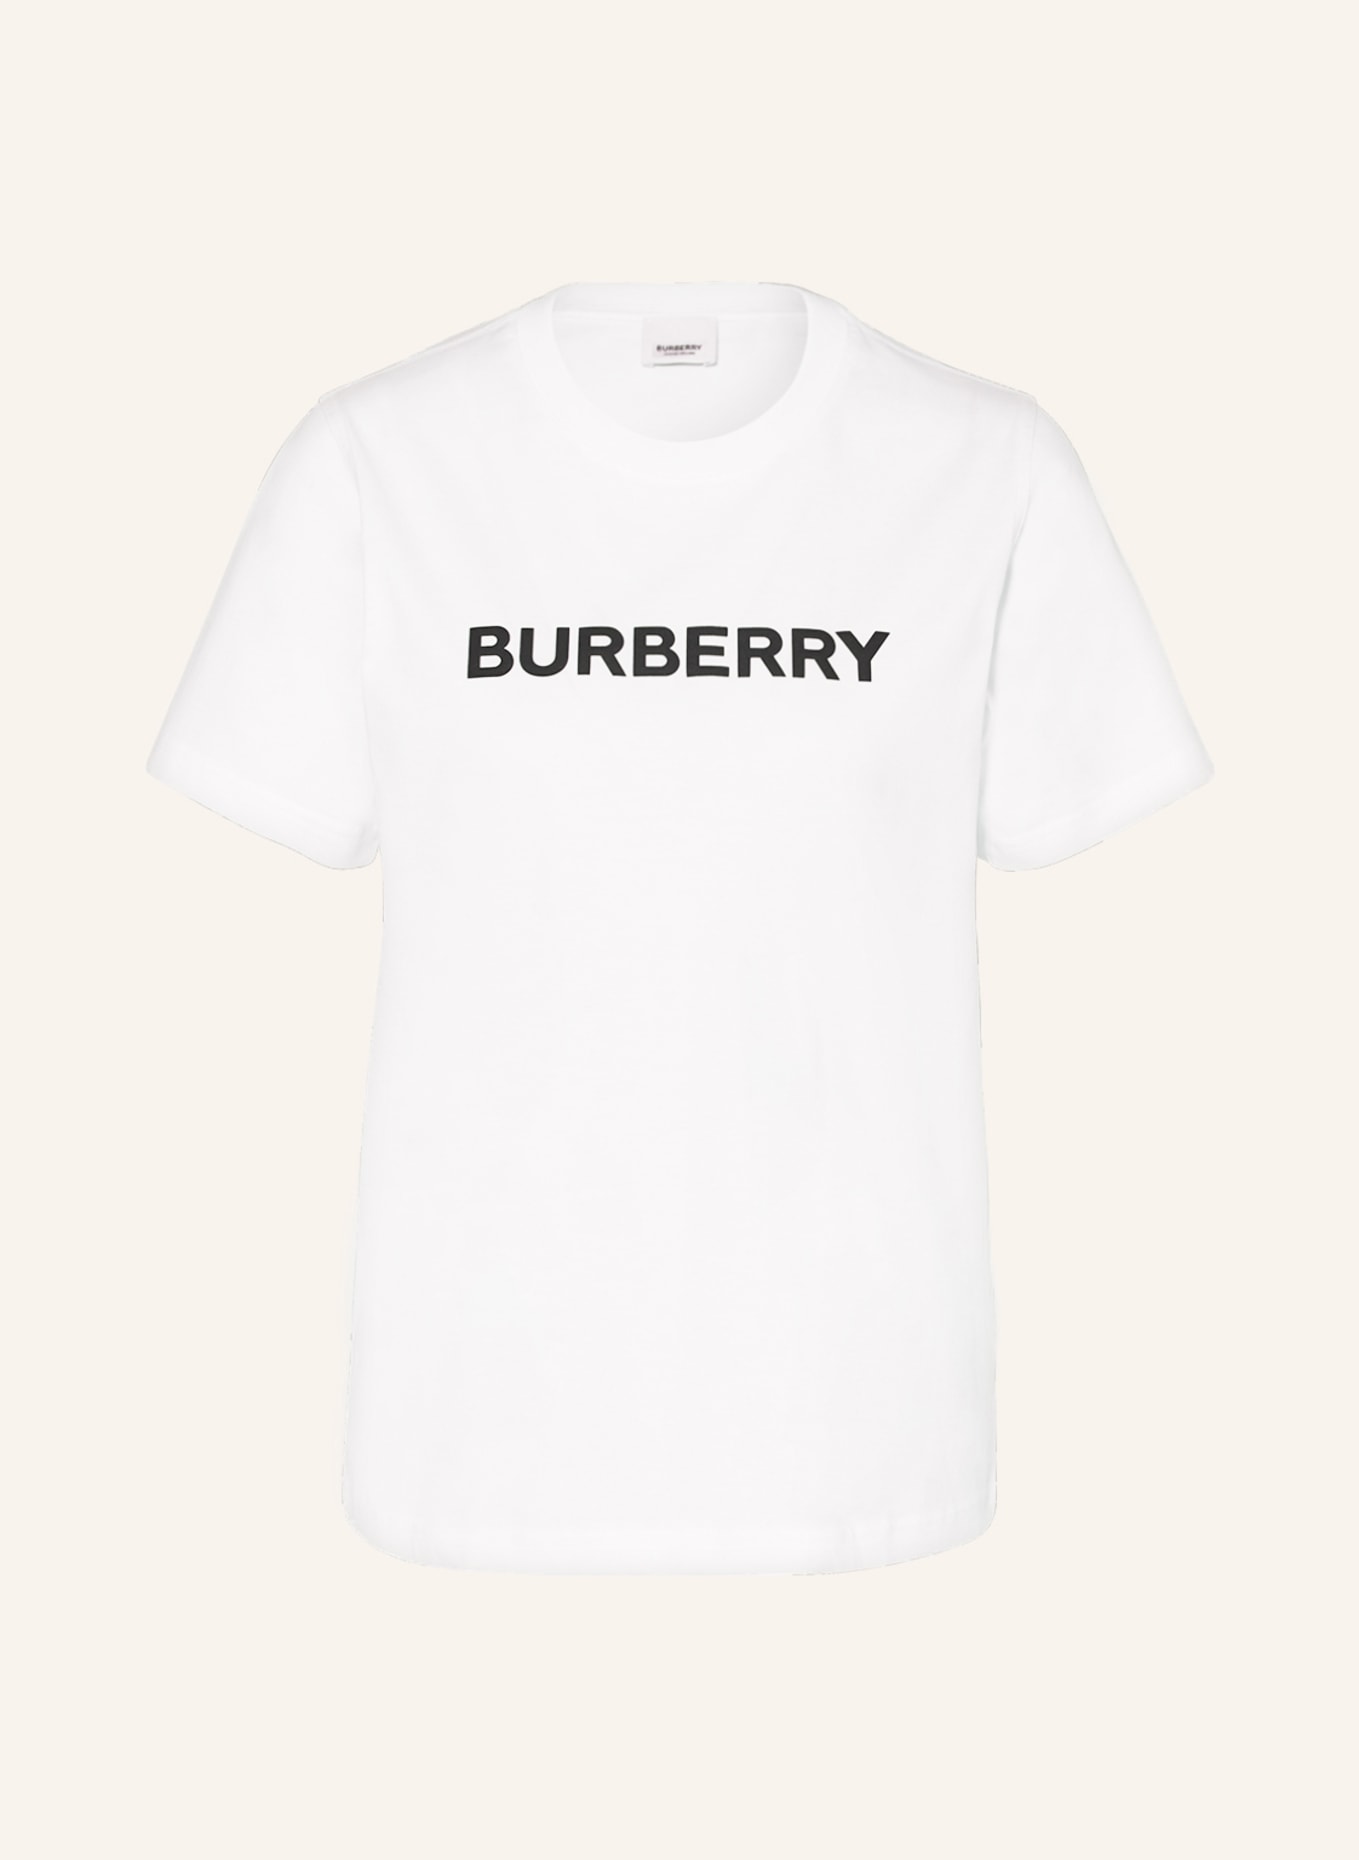 BURBERRY T-Shirt, Farbe: WEISS (Bild 1)